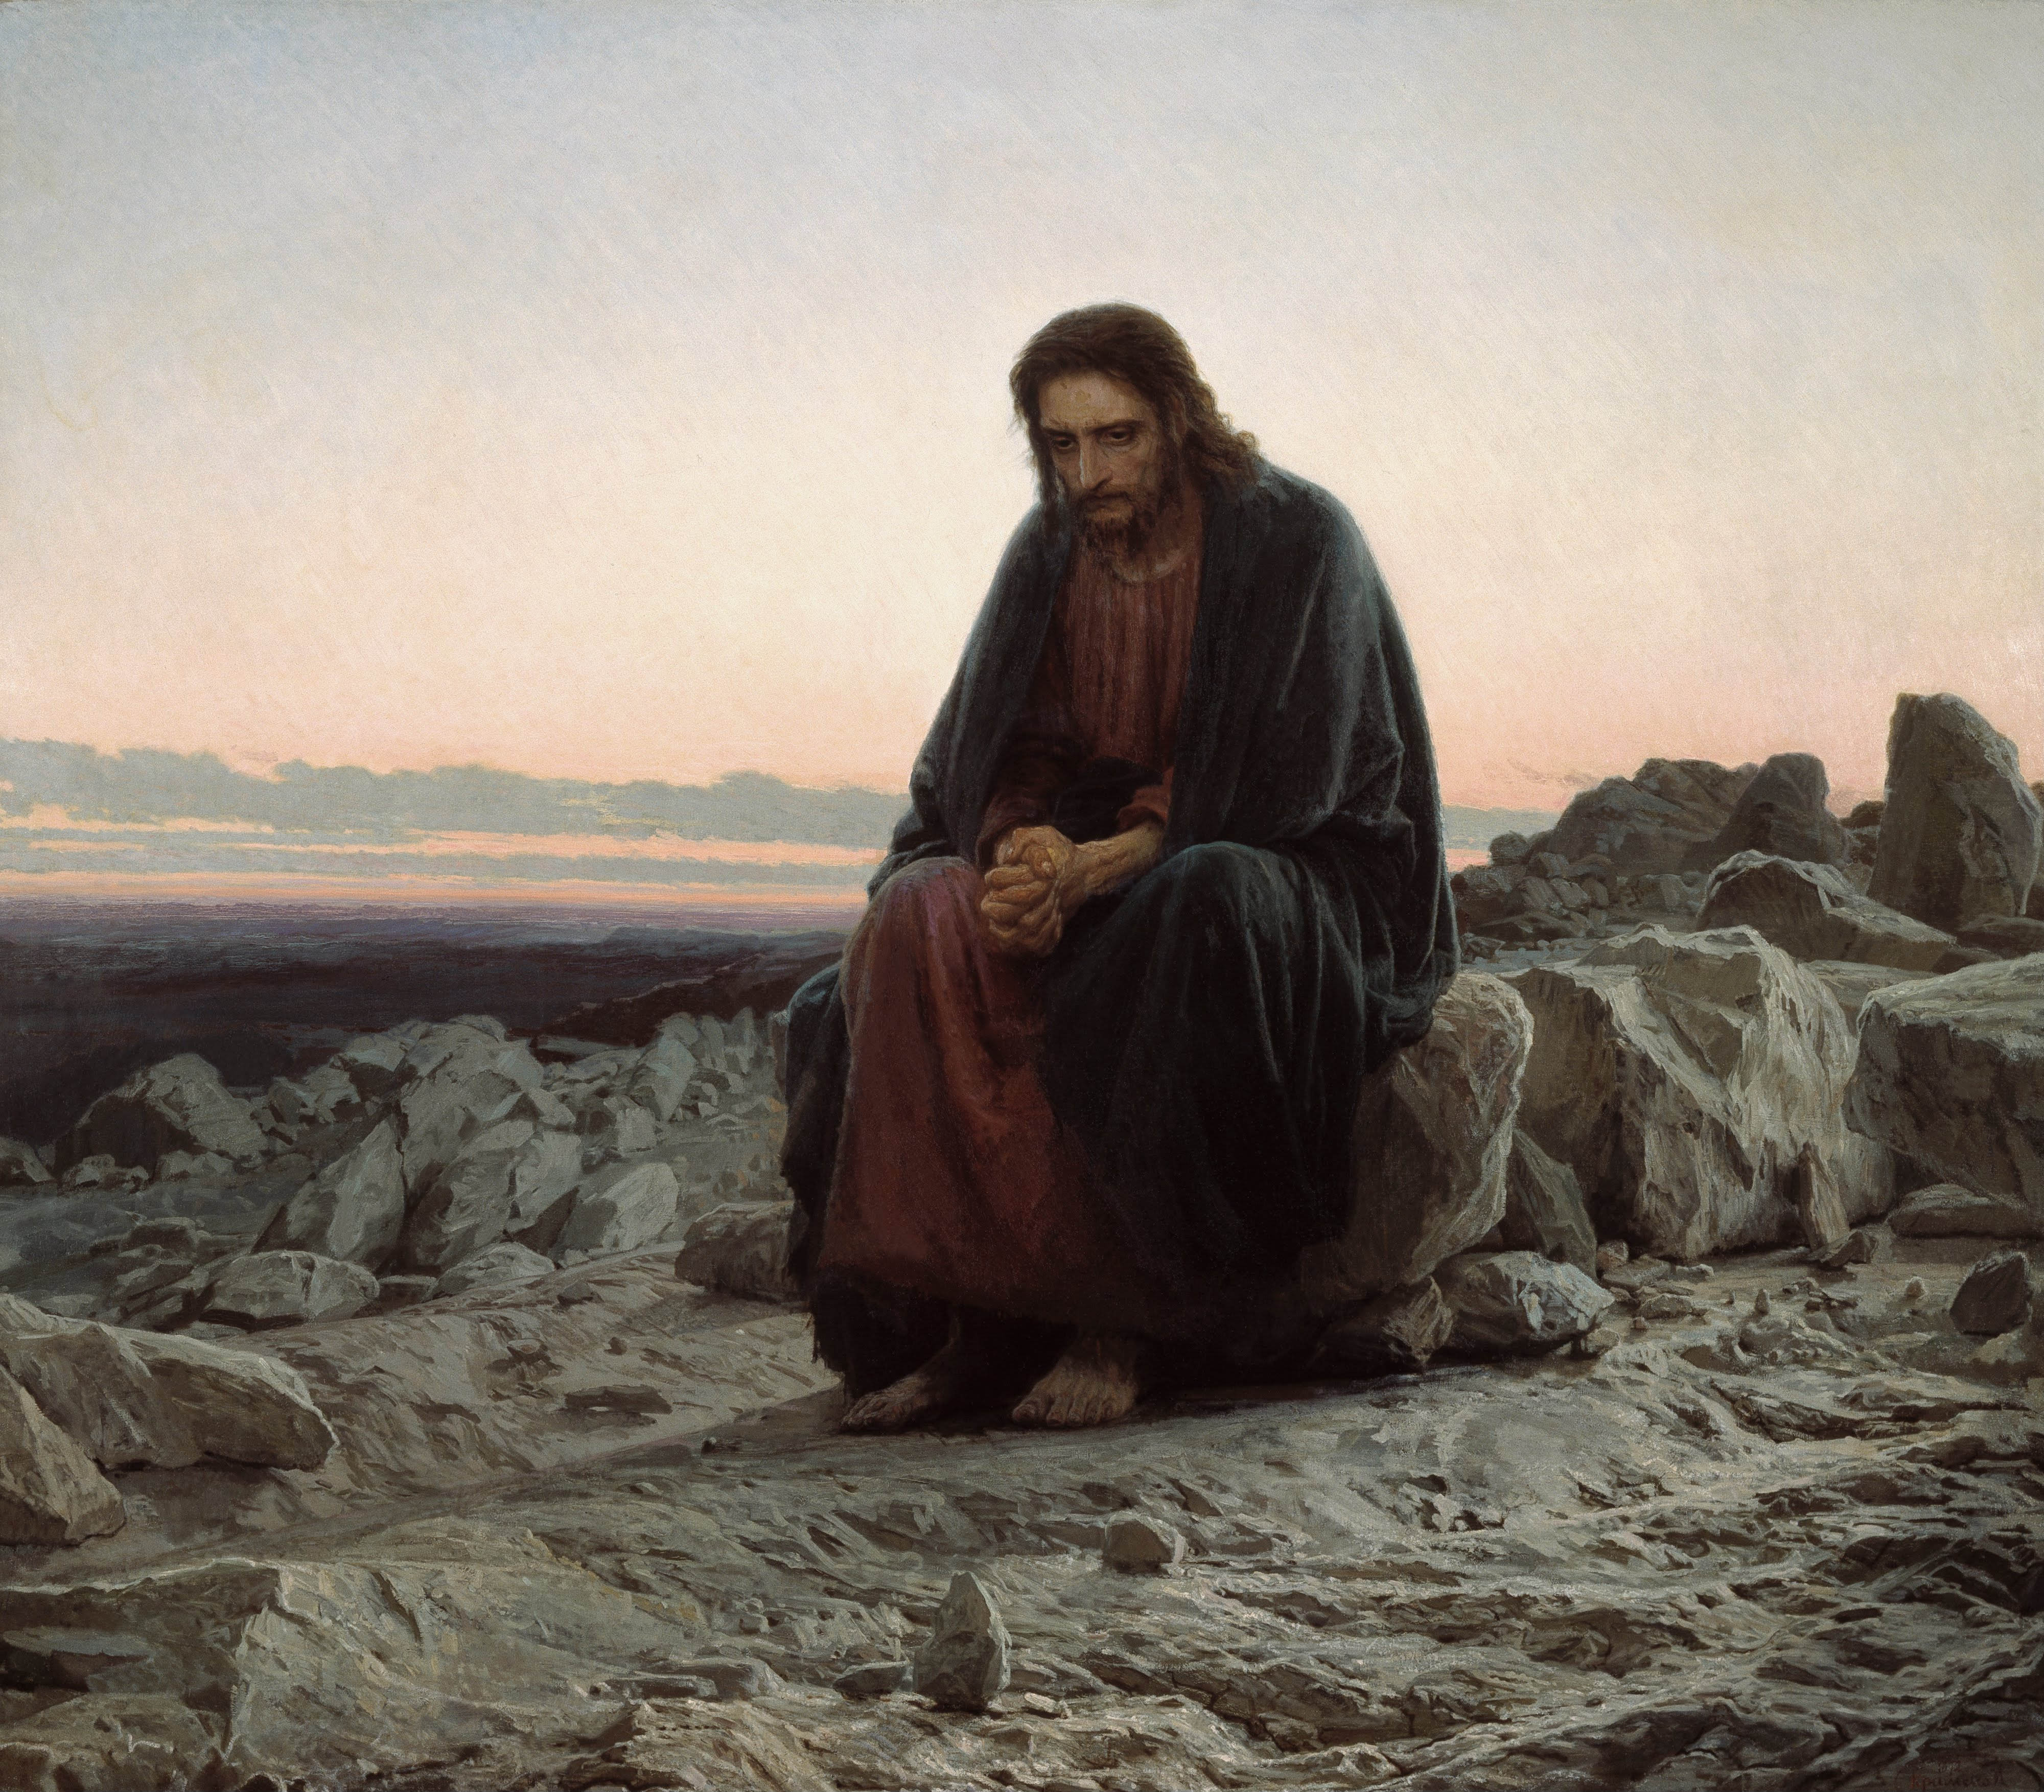 Le Christ dans le désert by Ivan Kramskoi - 1872 